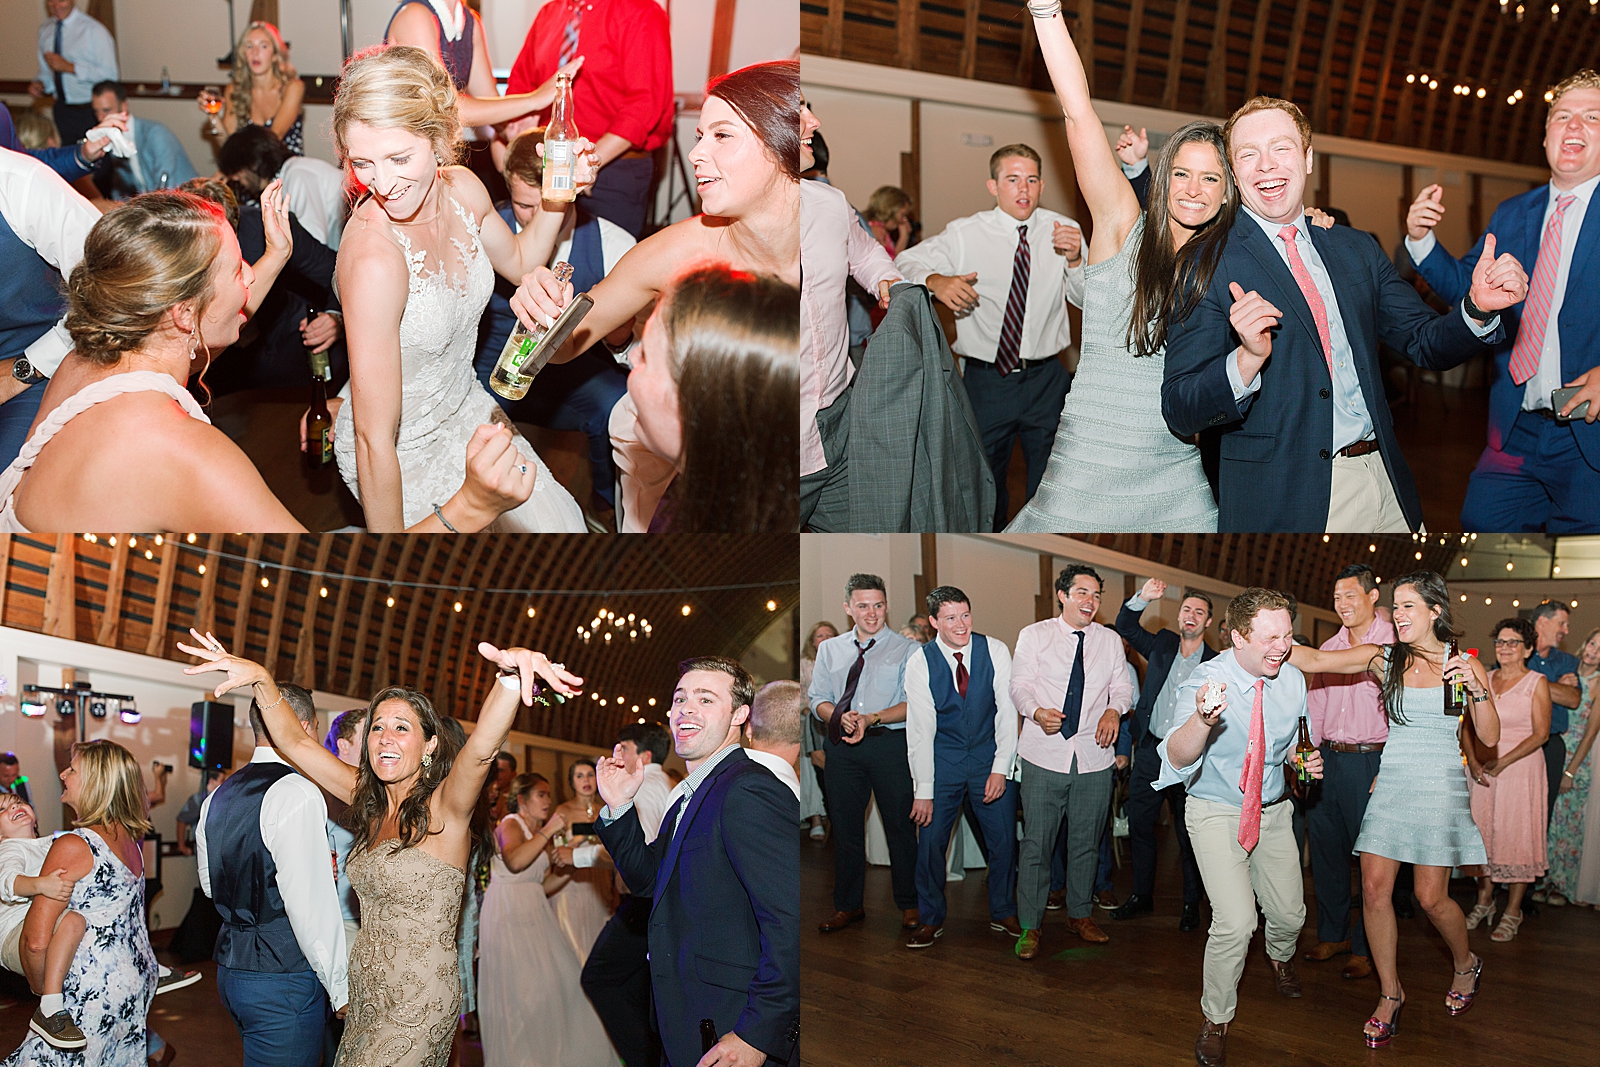 Winmock Wedding Reception Guests Dancing Photos